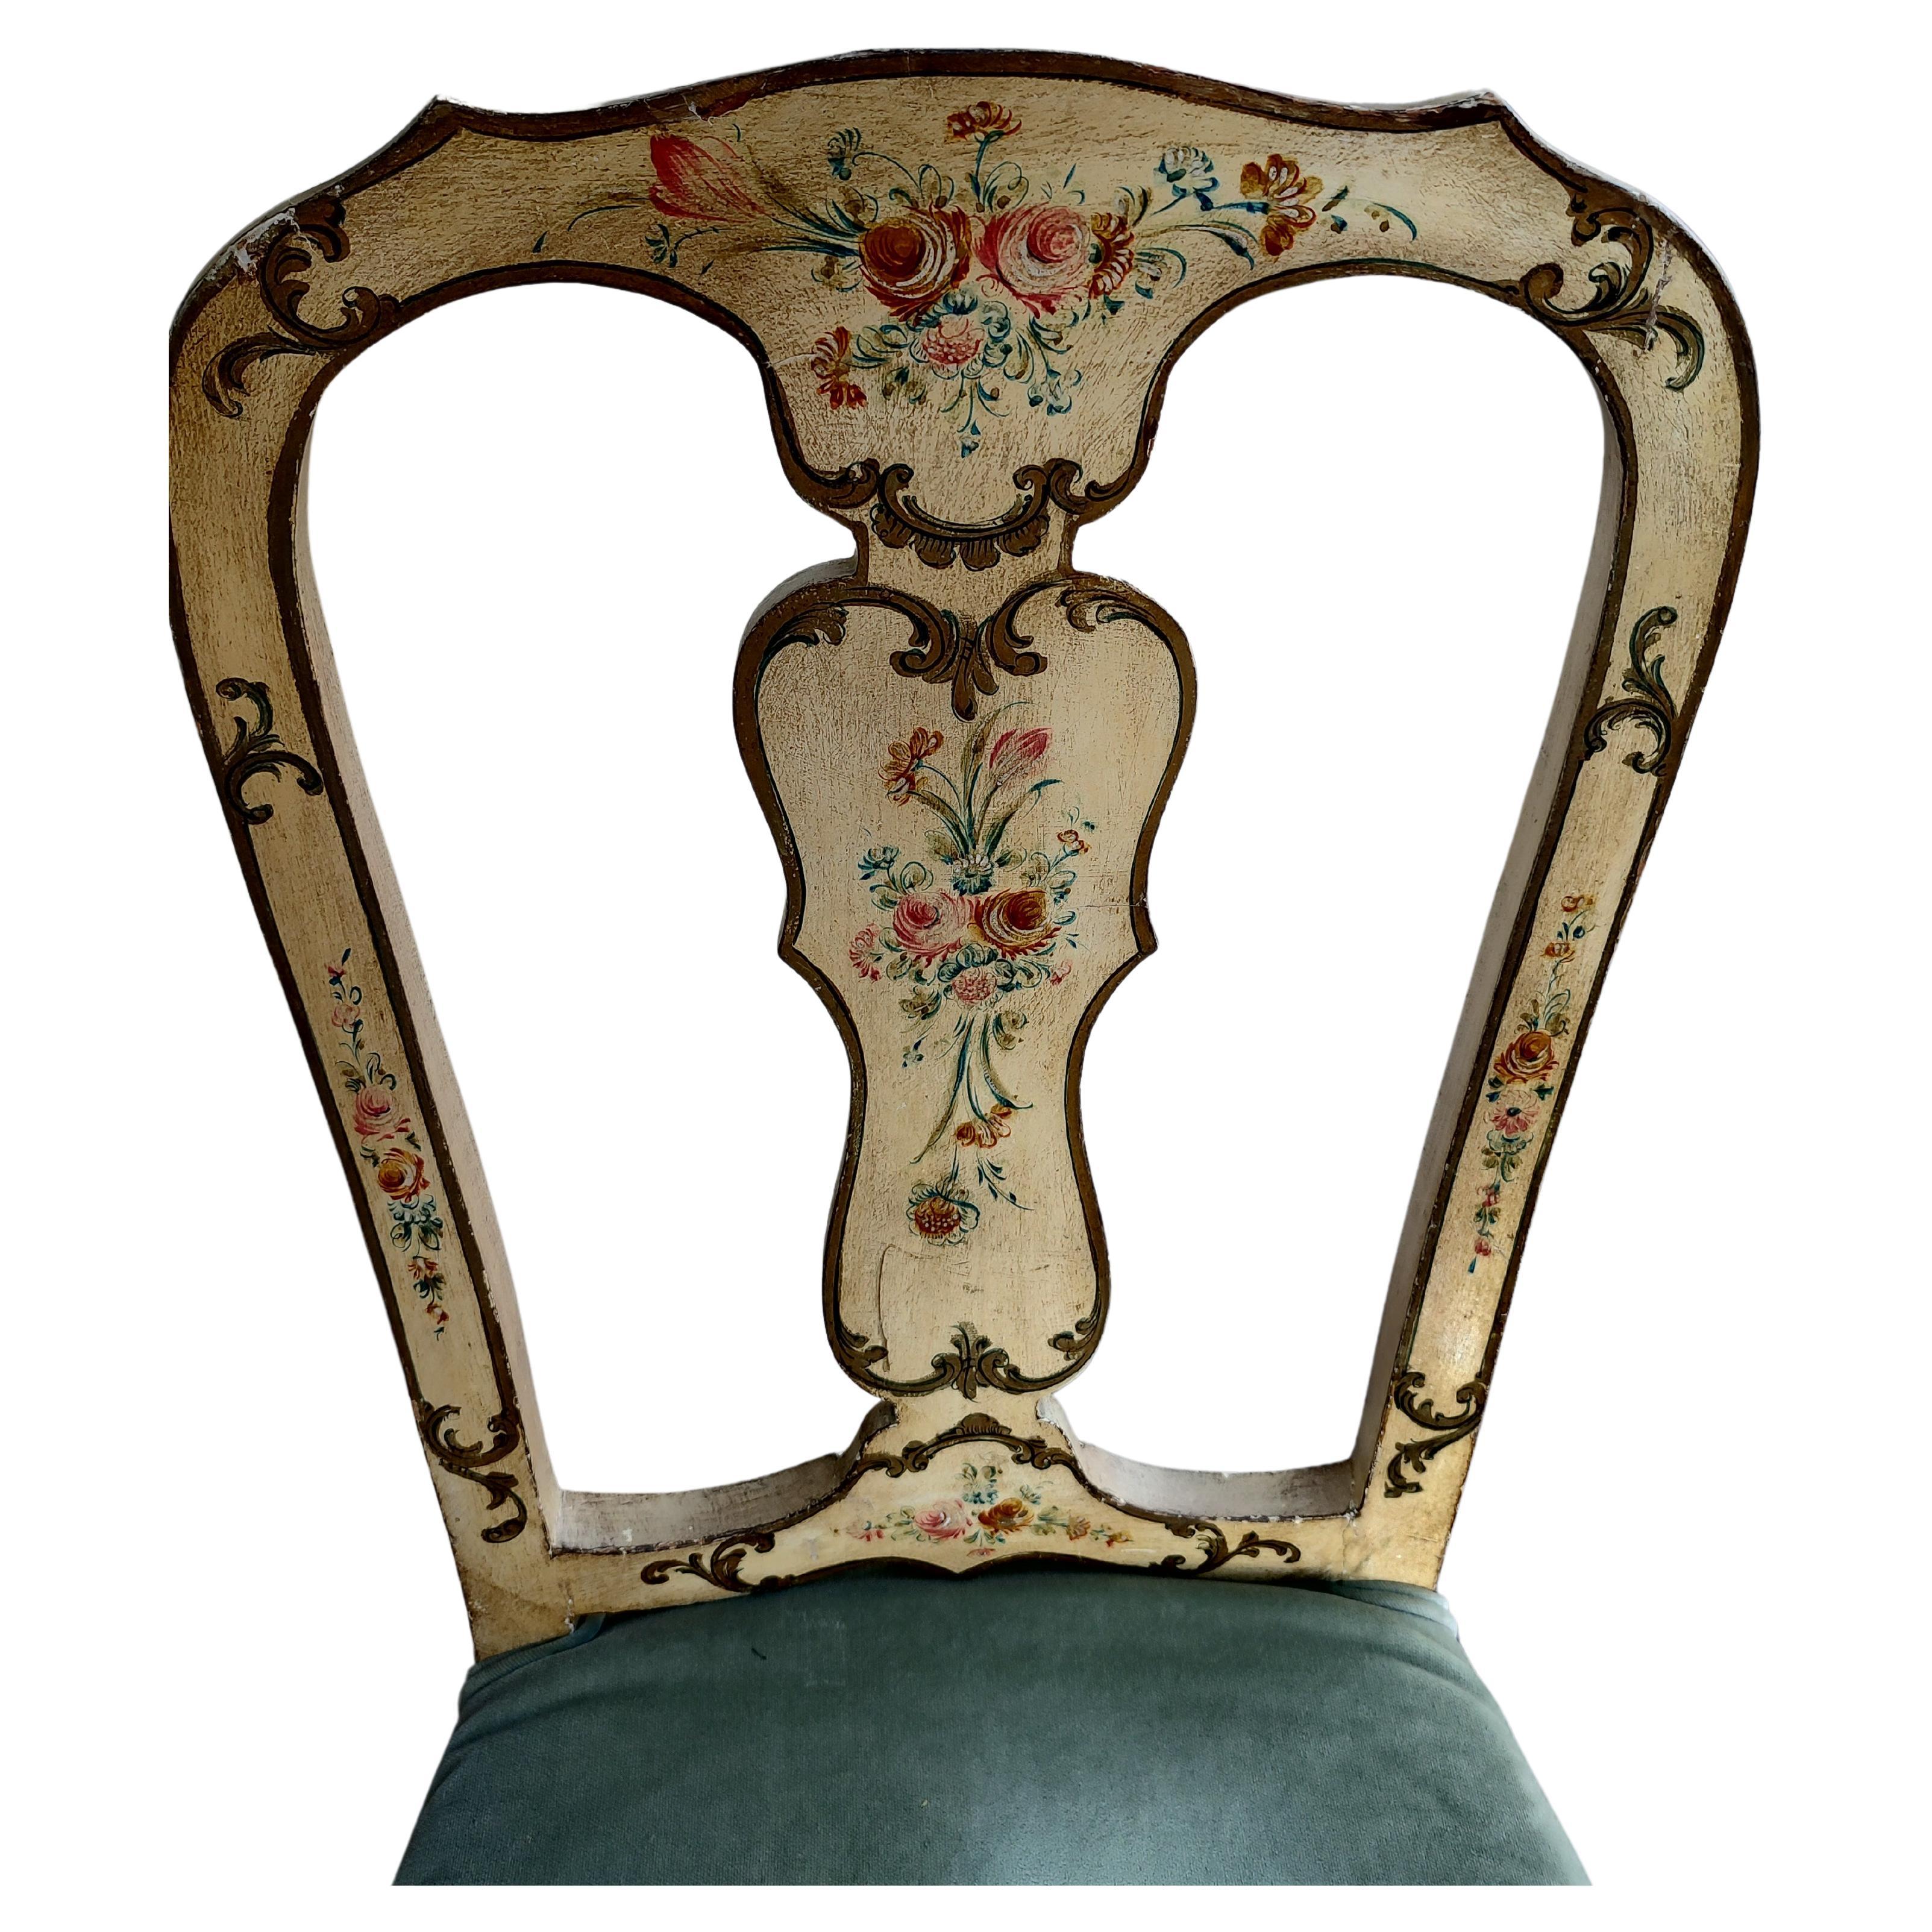 Fabuleuse paire de chaises d'appoint vénitiennes fabriquées et peintes à la main vers 1940. Les sièges rembourrés et la peinture vieillie donnent un aspect très chaleureux. Confortable aussi. Les dossiers à cannelures et les pieds cabriolets leur